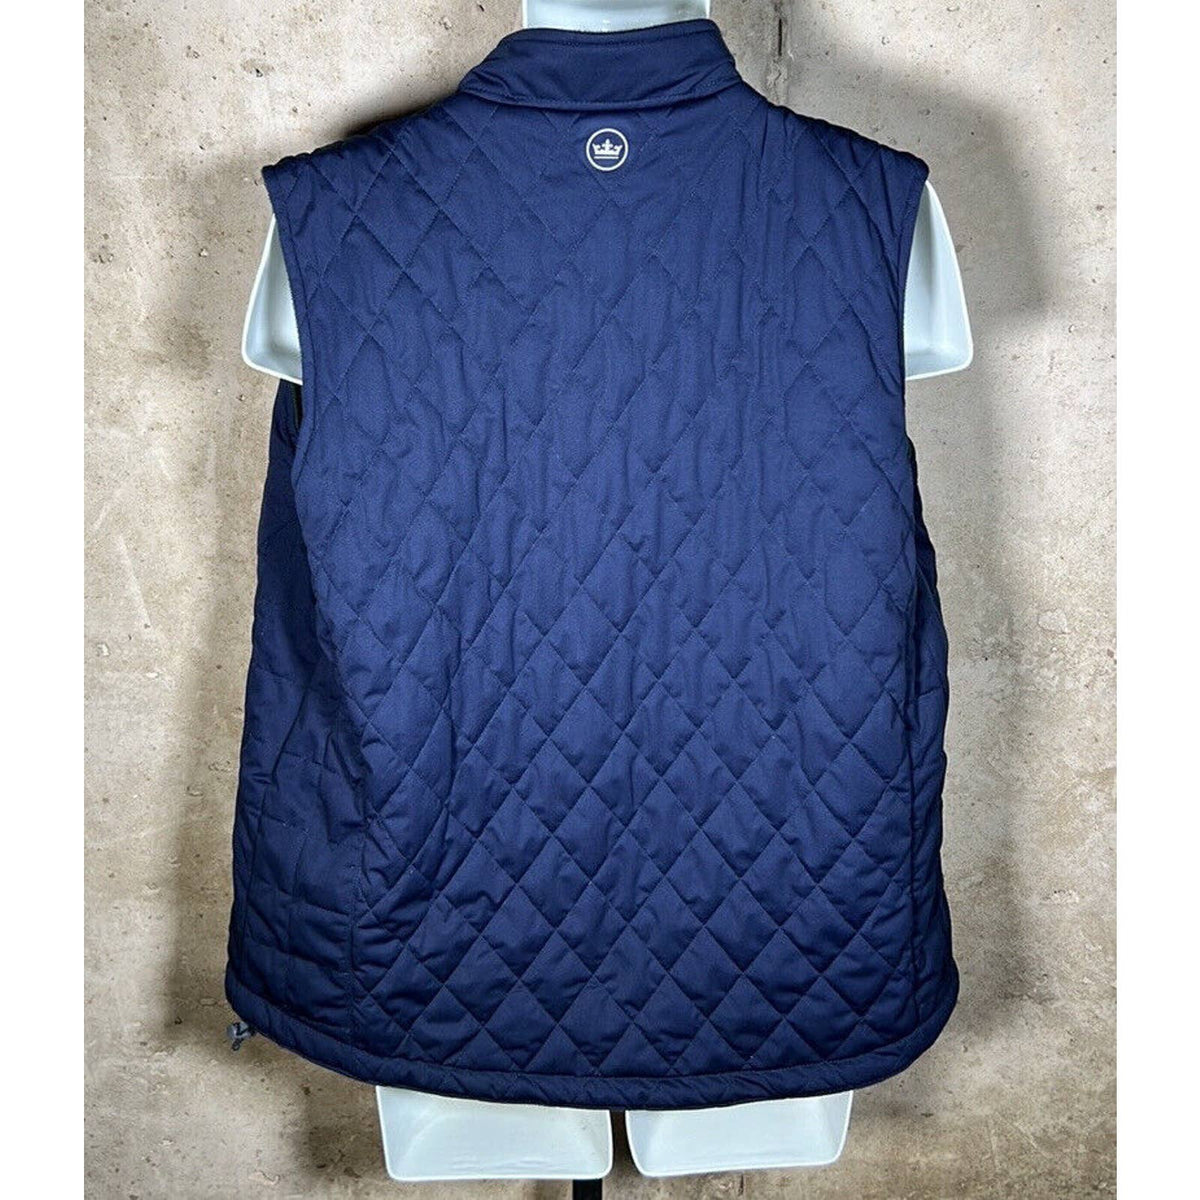 Peter Millar Fleece Green and Blue Reversible Zip Vest Sz. XL